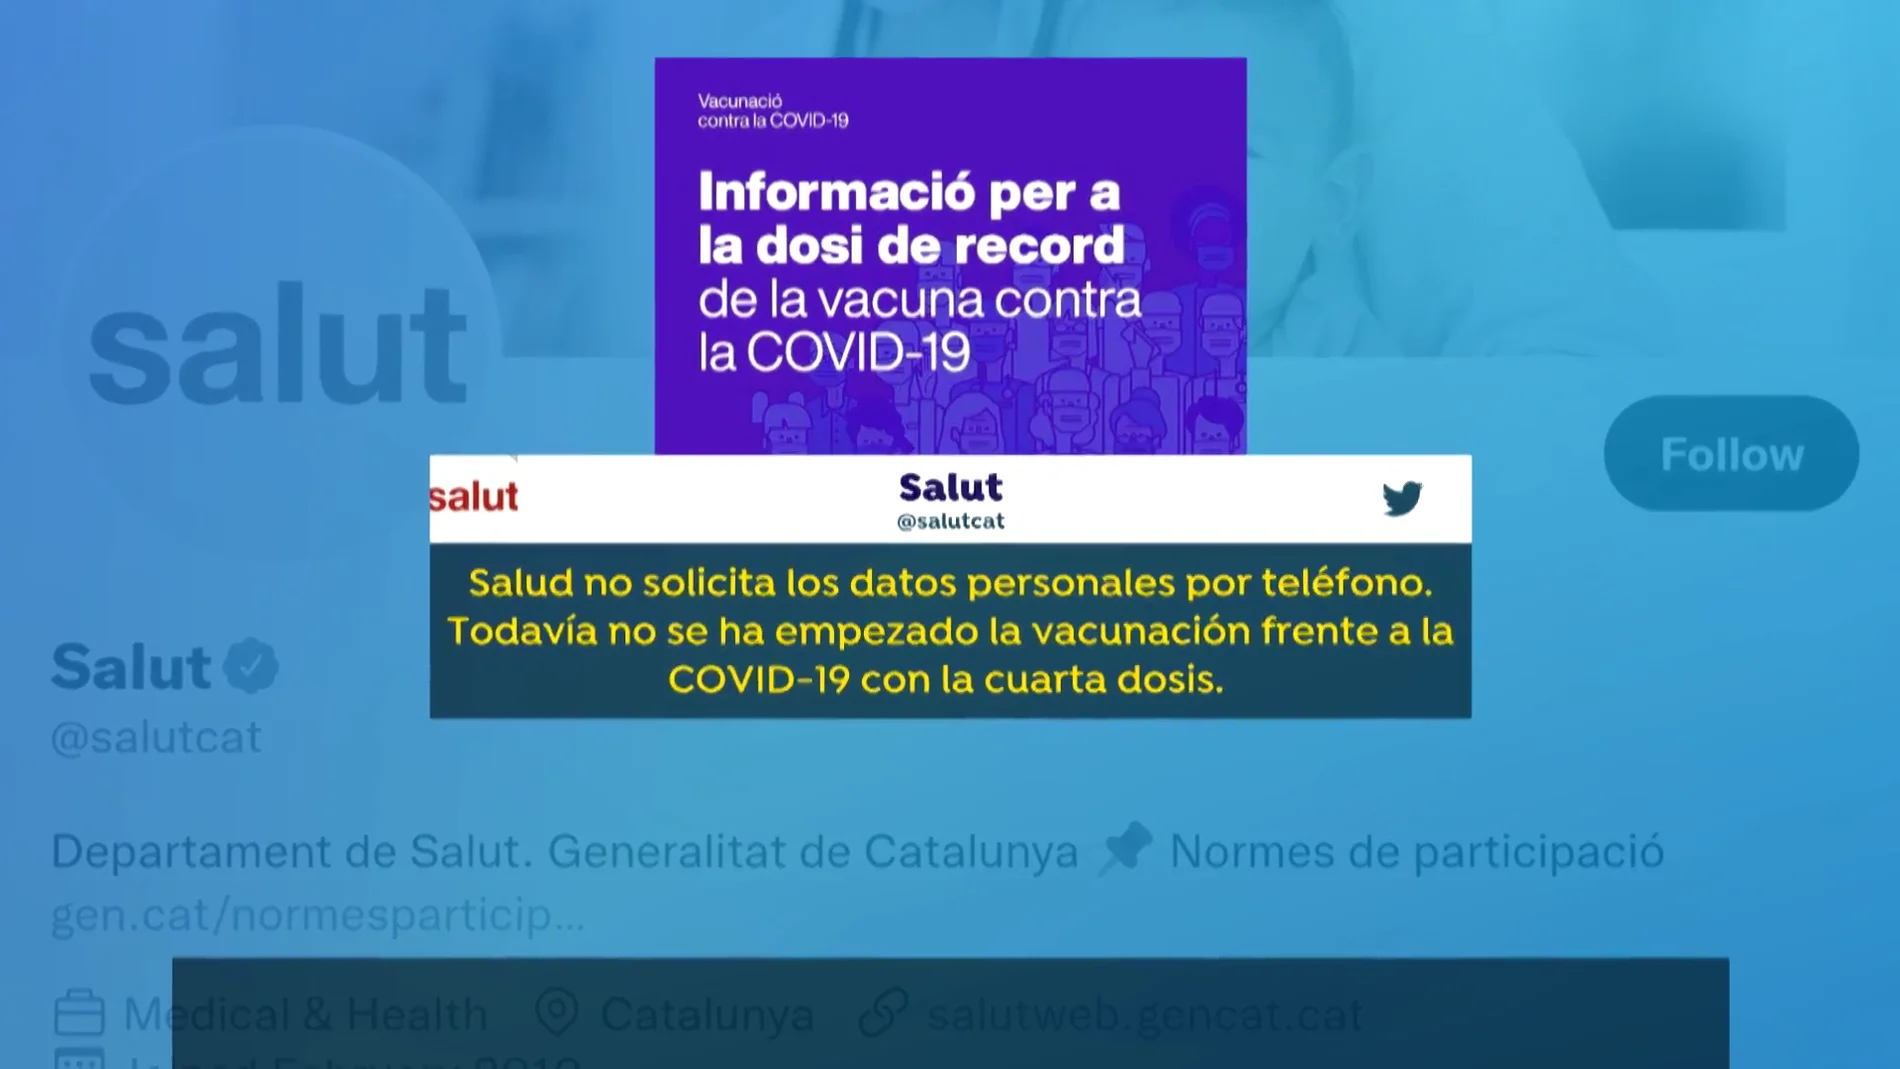 La estafa telefónica relacionada con la vacuna del COVID-19 en Cataluña